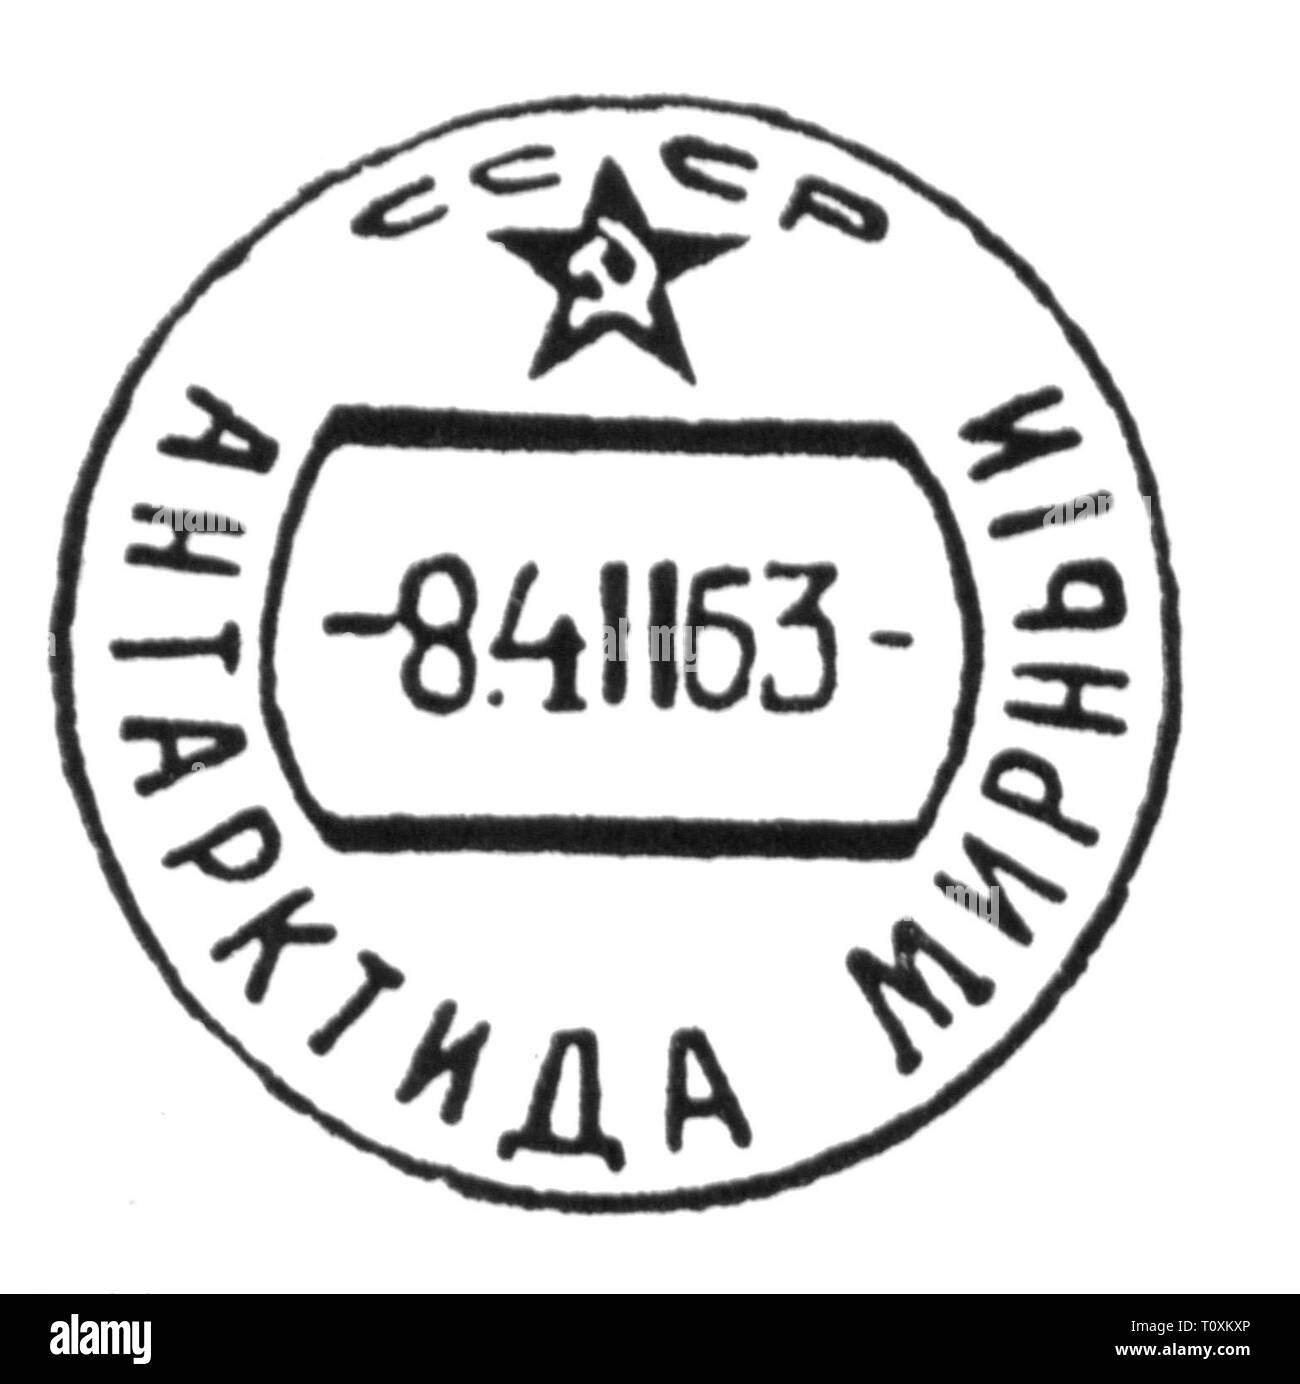 Mail, annulli postali, Russia, farà fede il timbro postale dell'Unione Sovietica stazione antartica Mirny, 4.2.1963, artista del diritto d'autore non deve essere cancellata Foto Stock